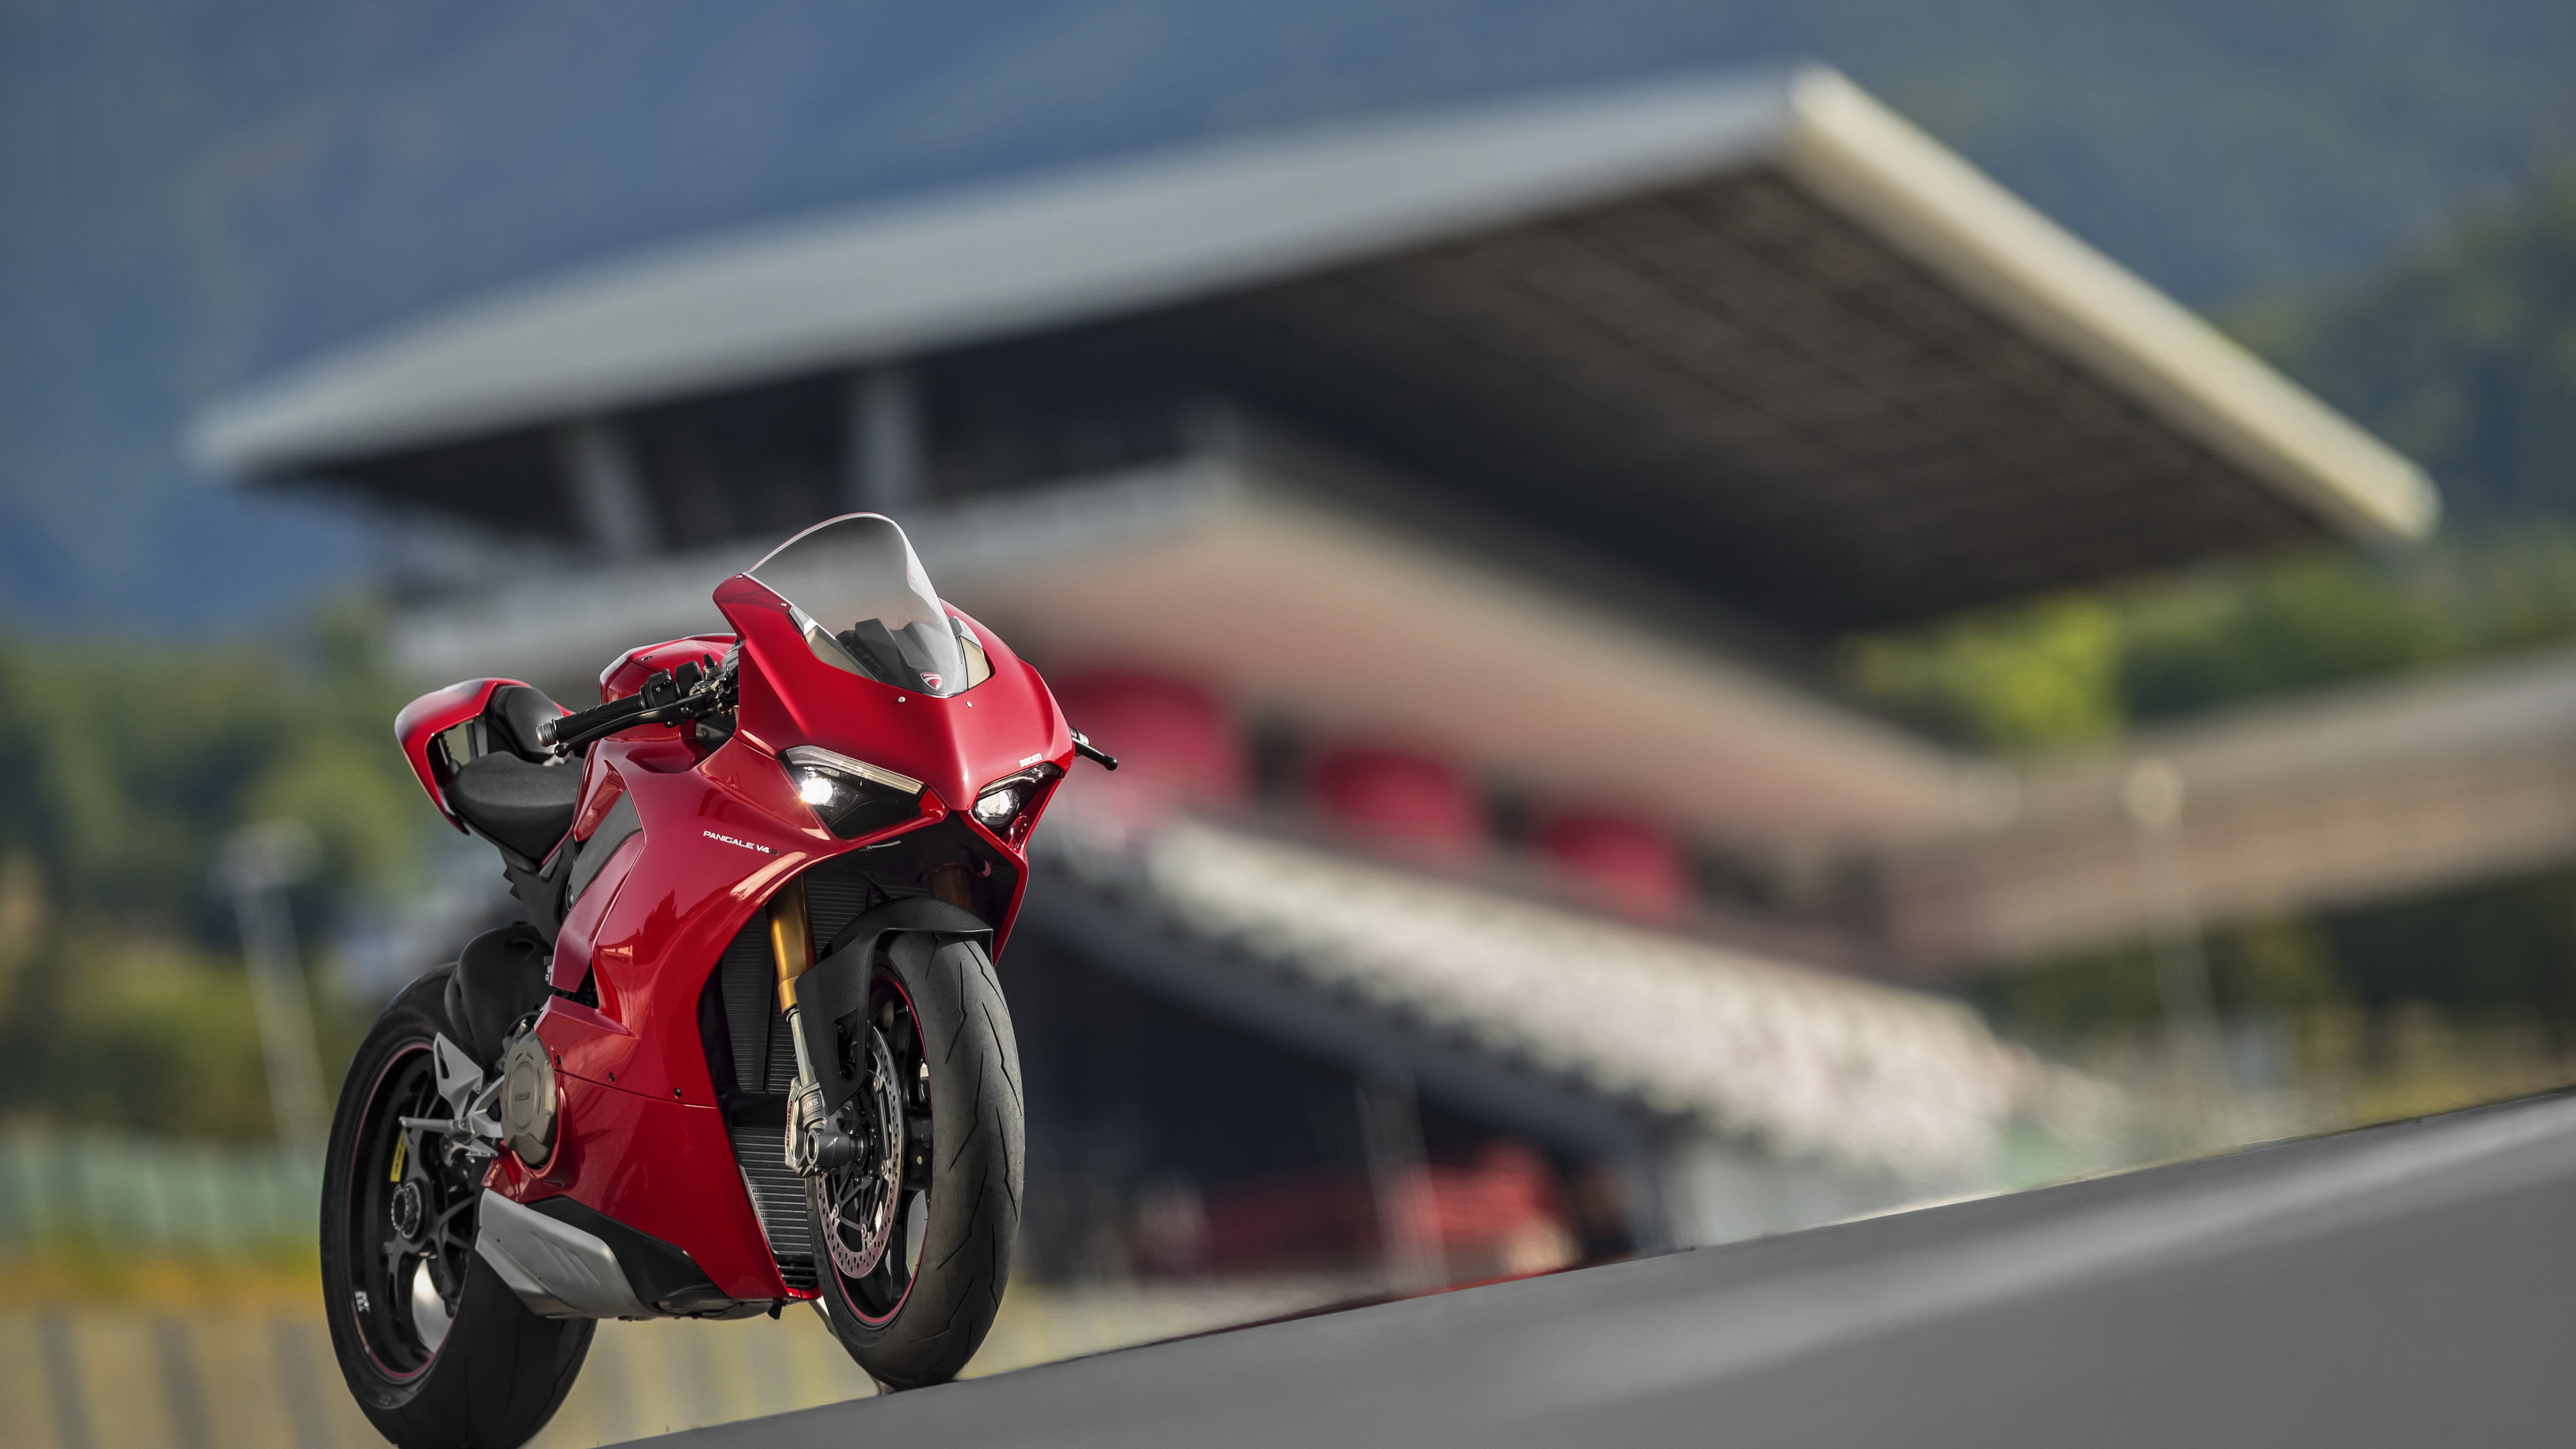 Ducati Panigale V4 S 2018 - Ducati Panigale 2018 - HD Wallpaper 